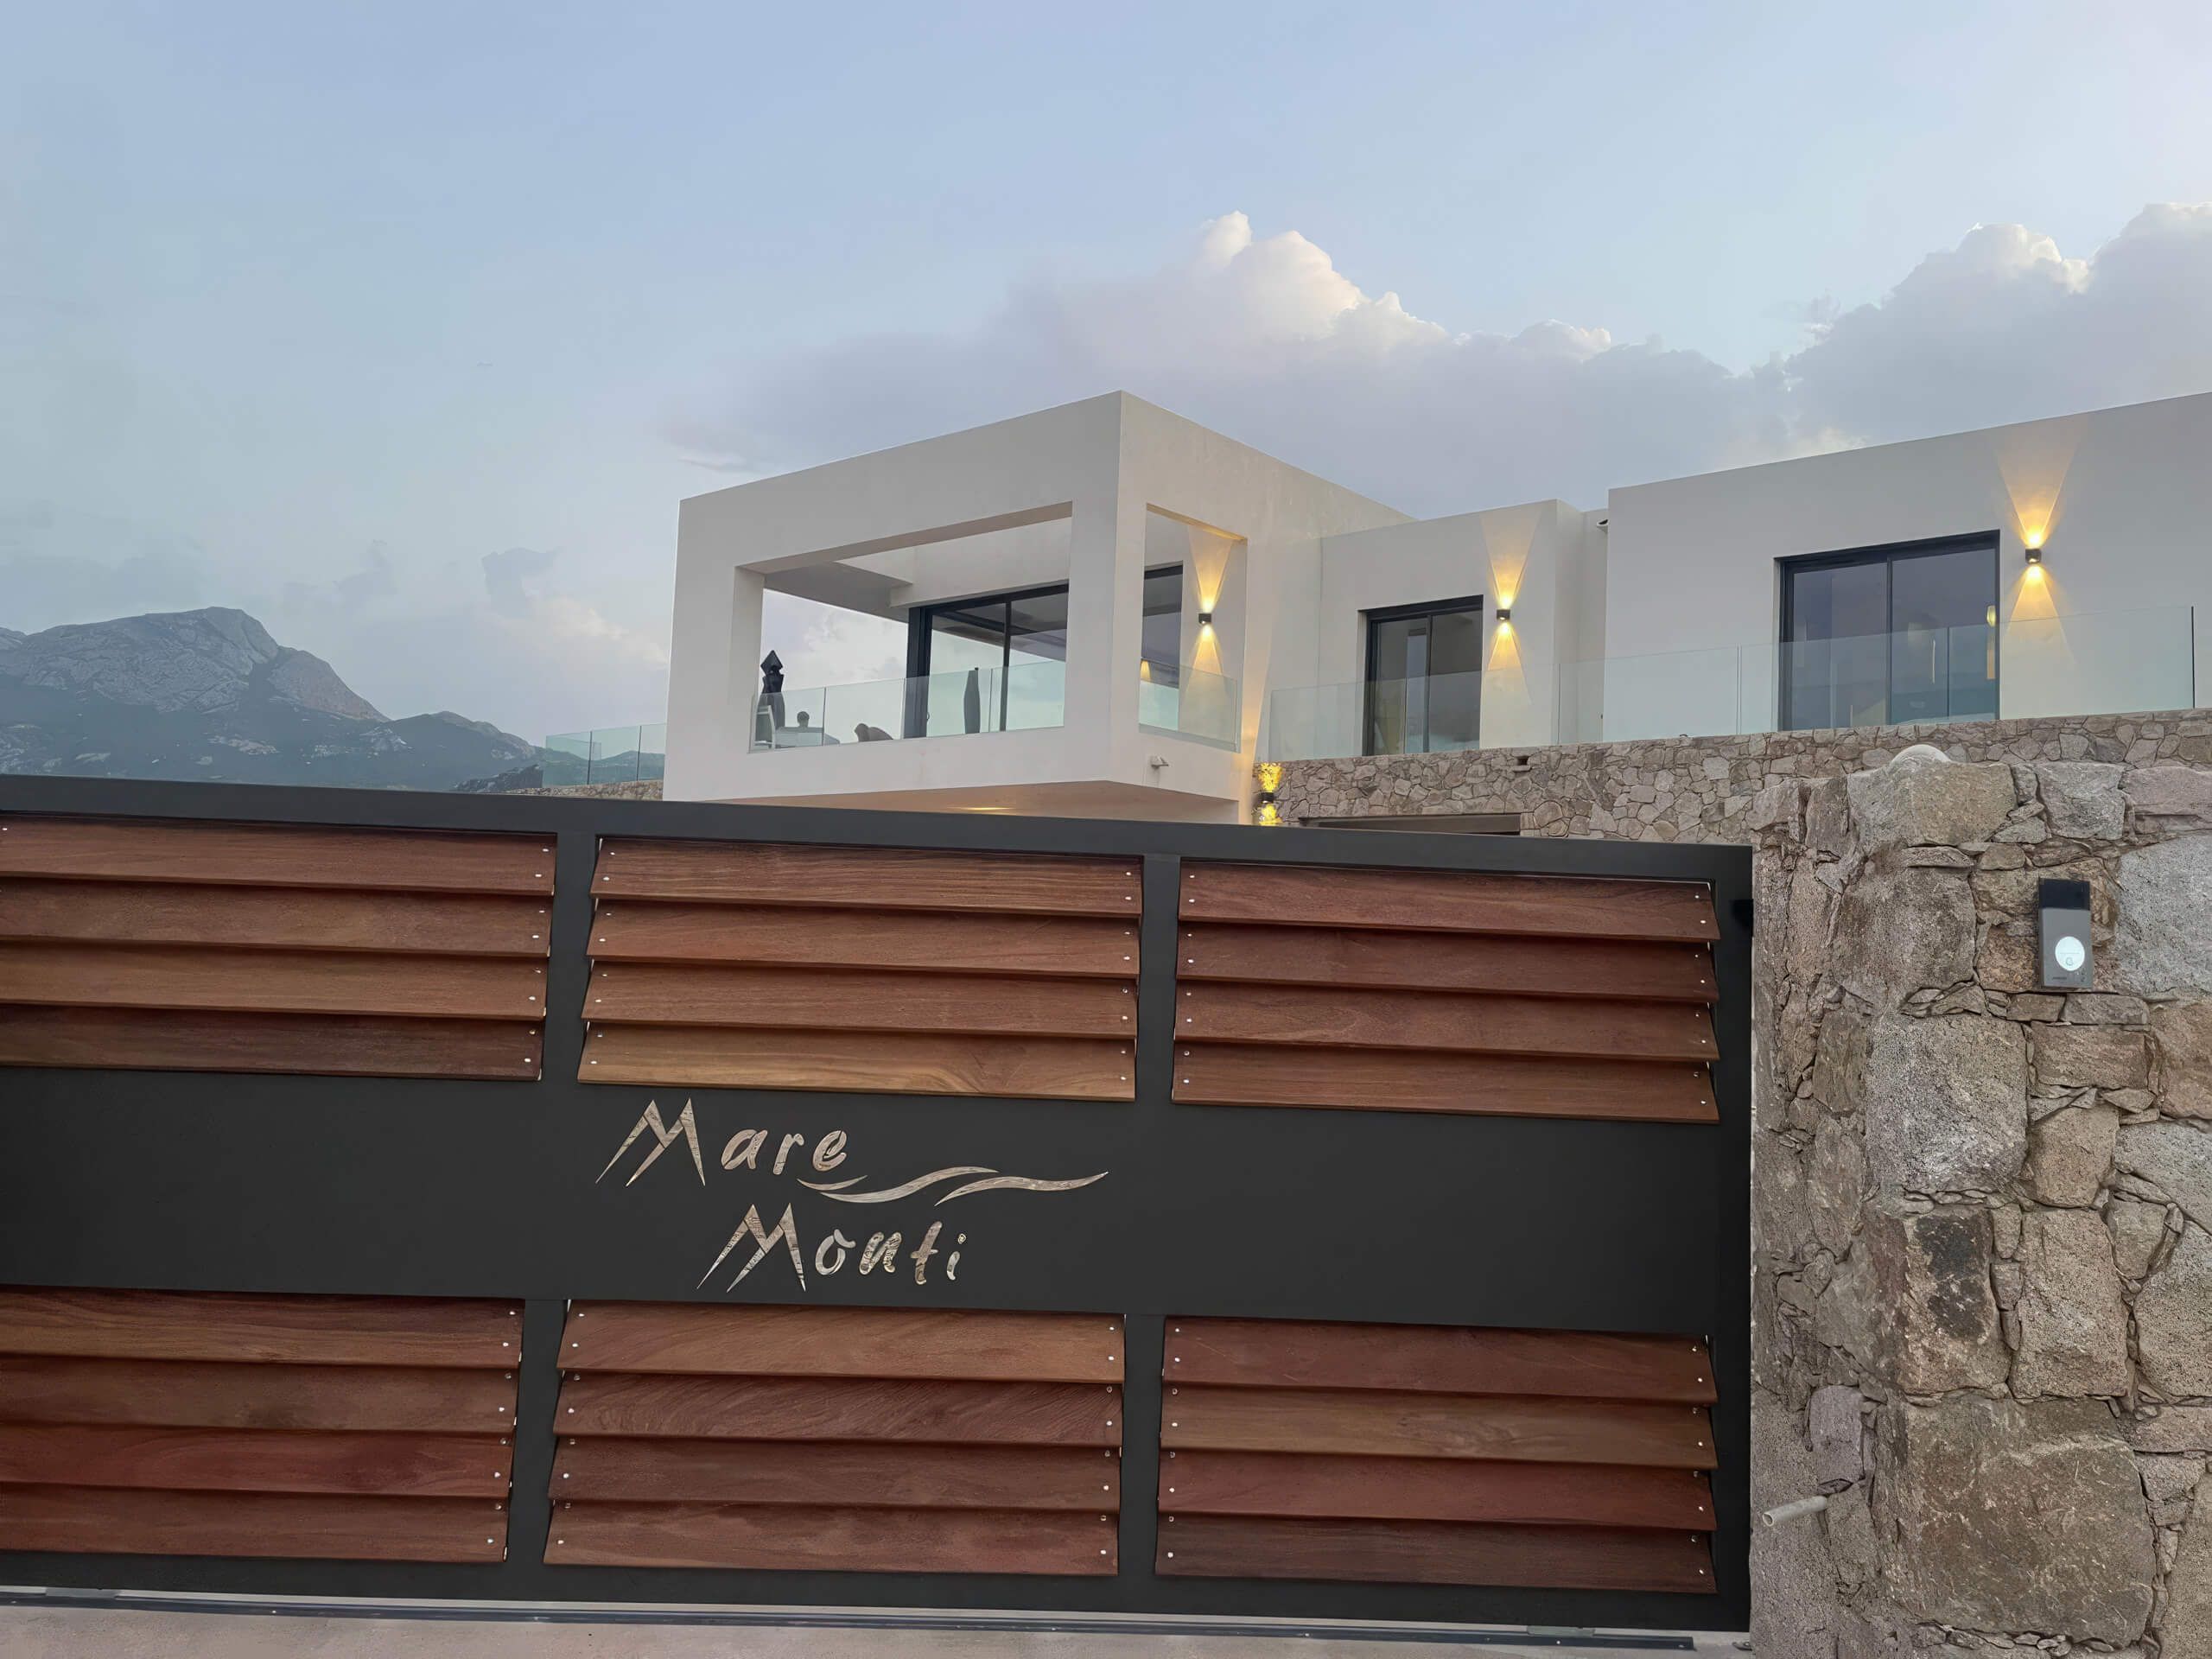 Villa Mare Monti - Le portail